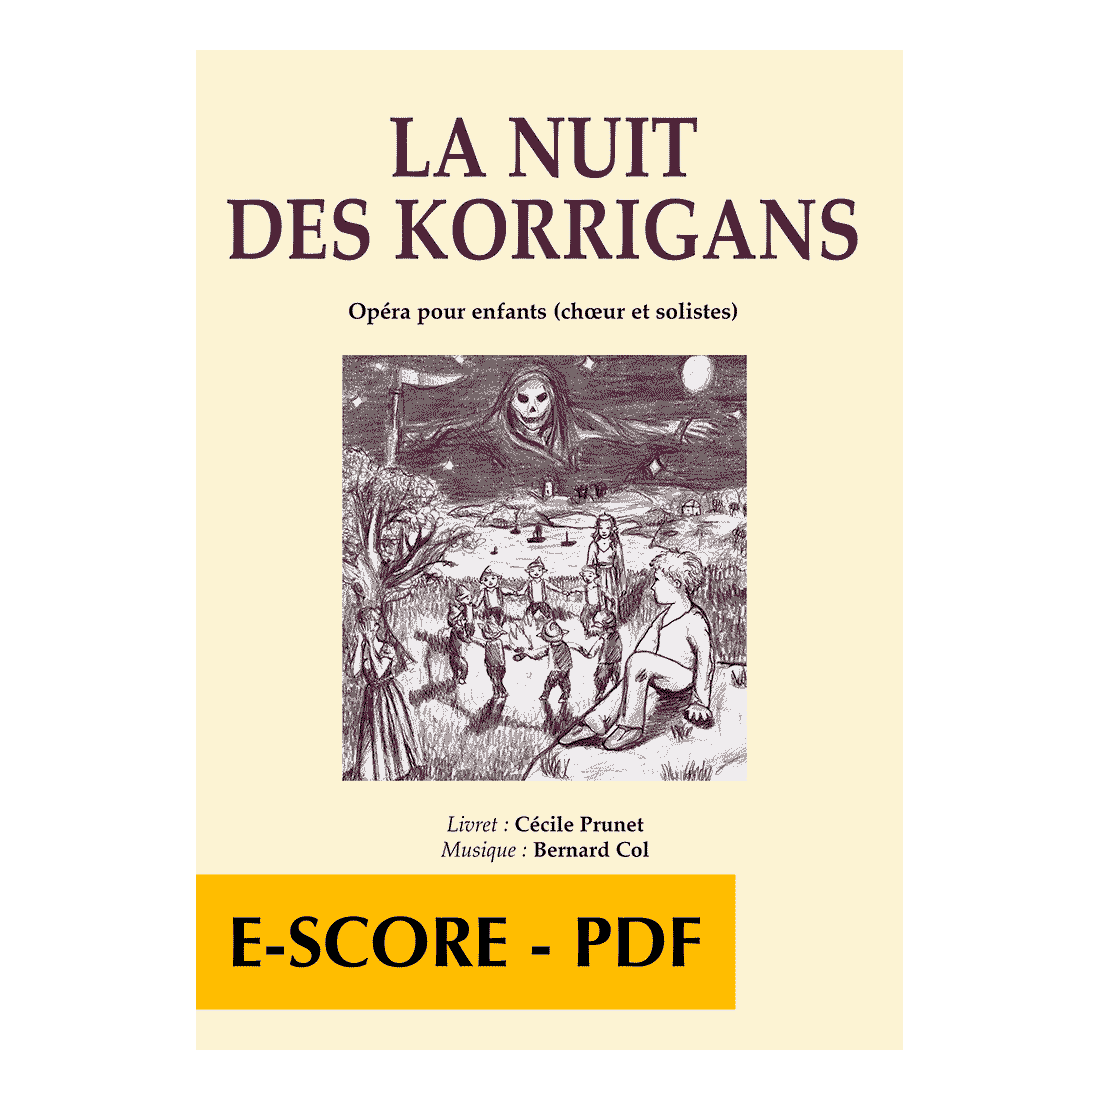 La nuit des Korrigans - Children's opera (PIANO-VOCAL) - E-score PDF